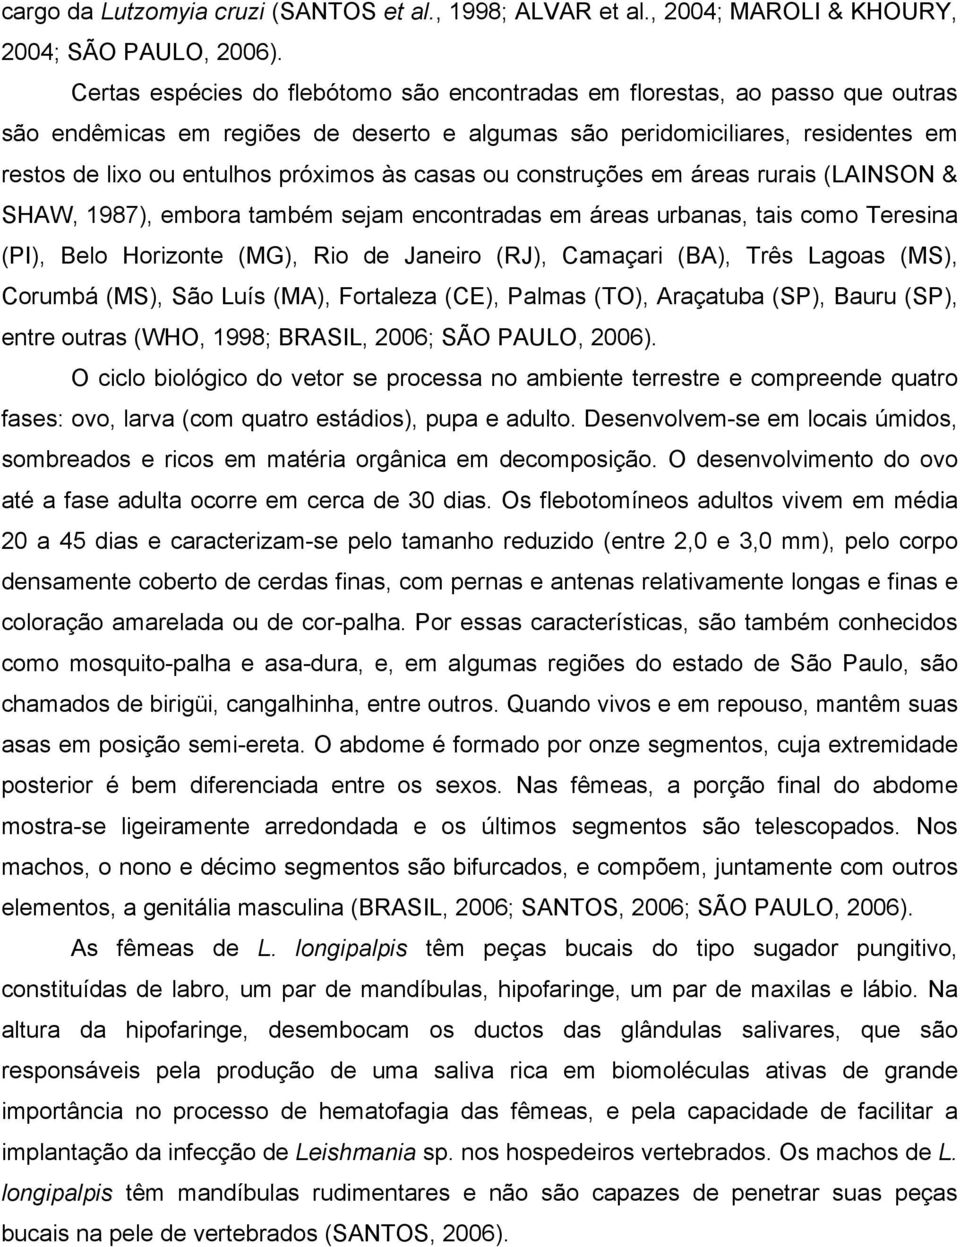 casas ou construções em áreas rurais (LAINSON & SHAW, 1987), embora também sejam encontradas em áreas urbanas, tais como Teresina (PI), Belo Horizonte (MG), Rio de Janeiro (RJ), Camaçari (BA), Três